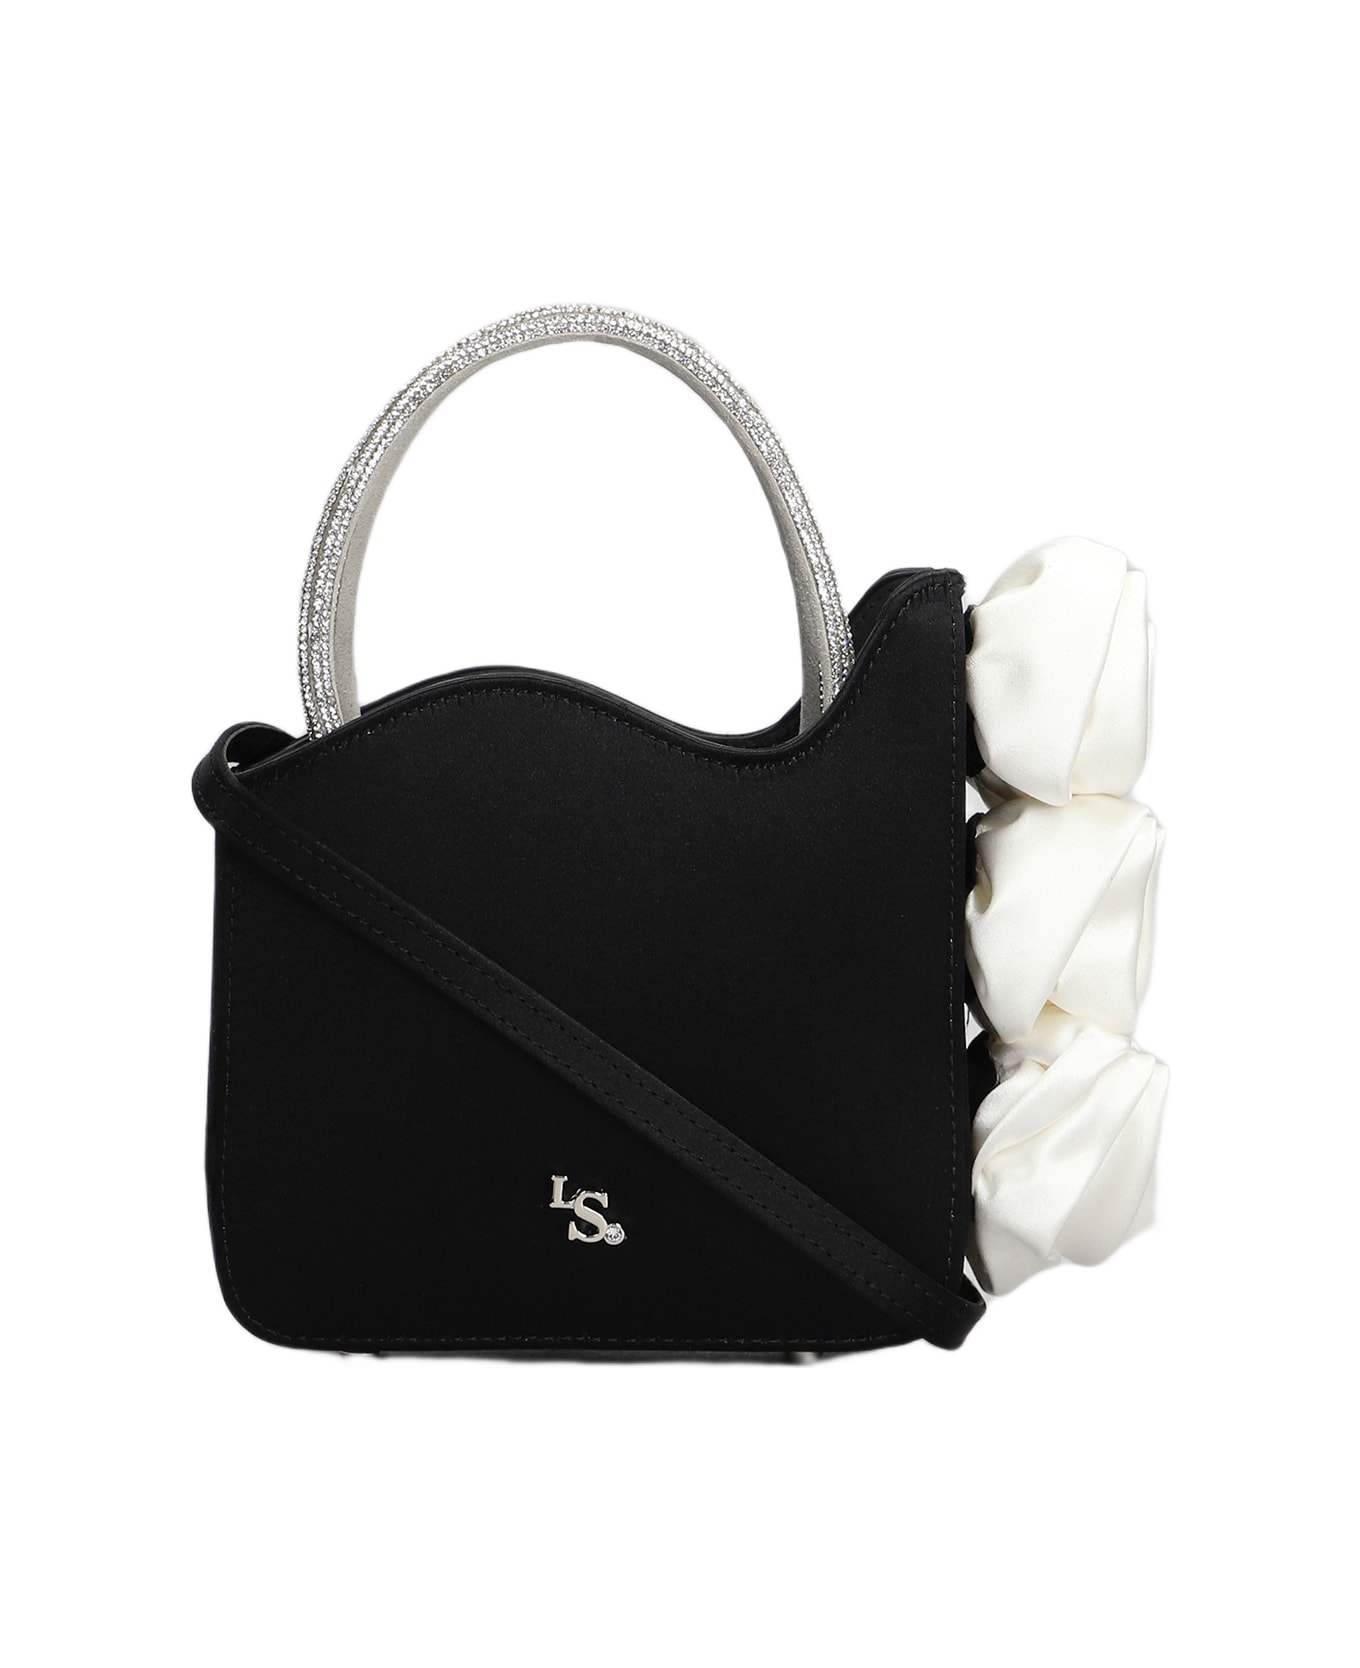 Le Silla Rose Shoulder Bag In Black Satin - black